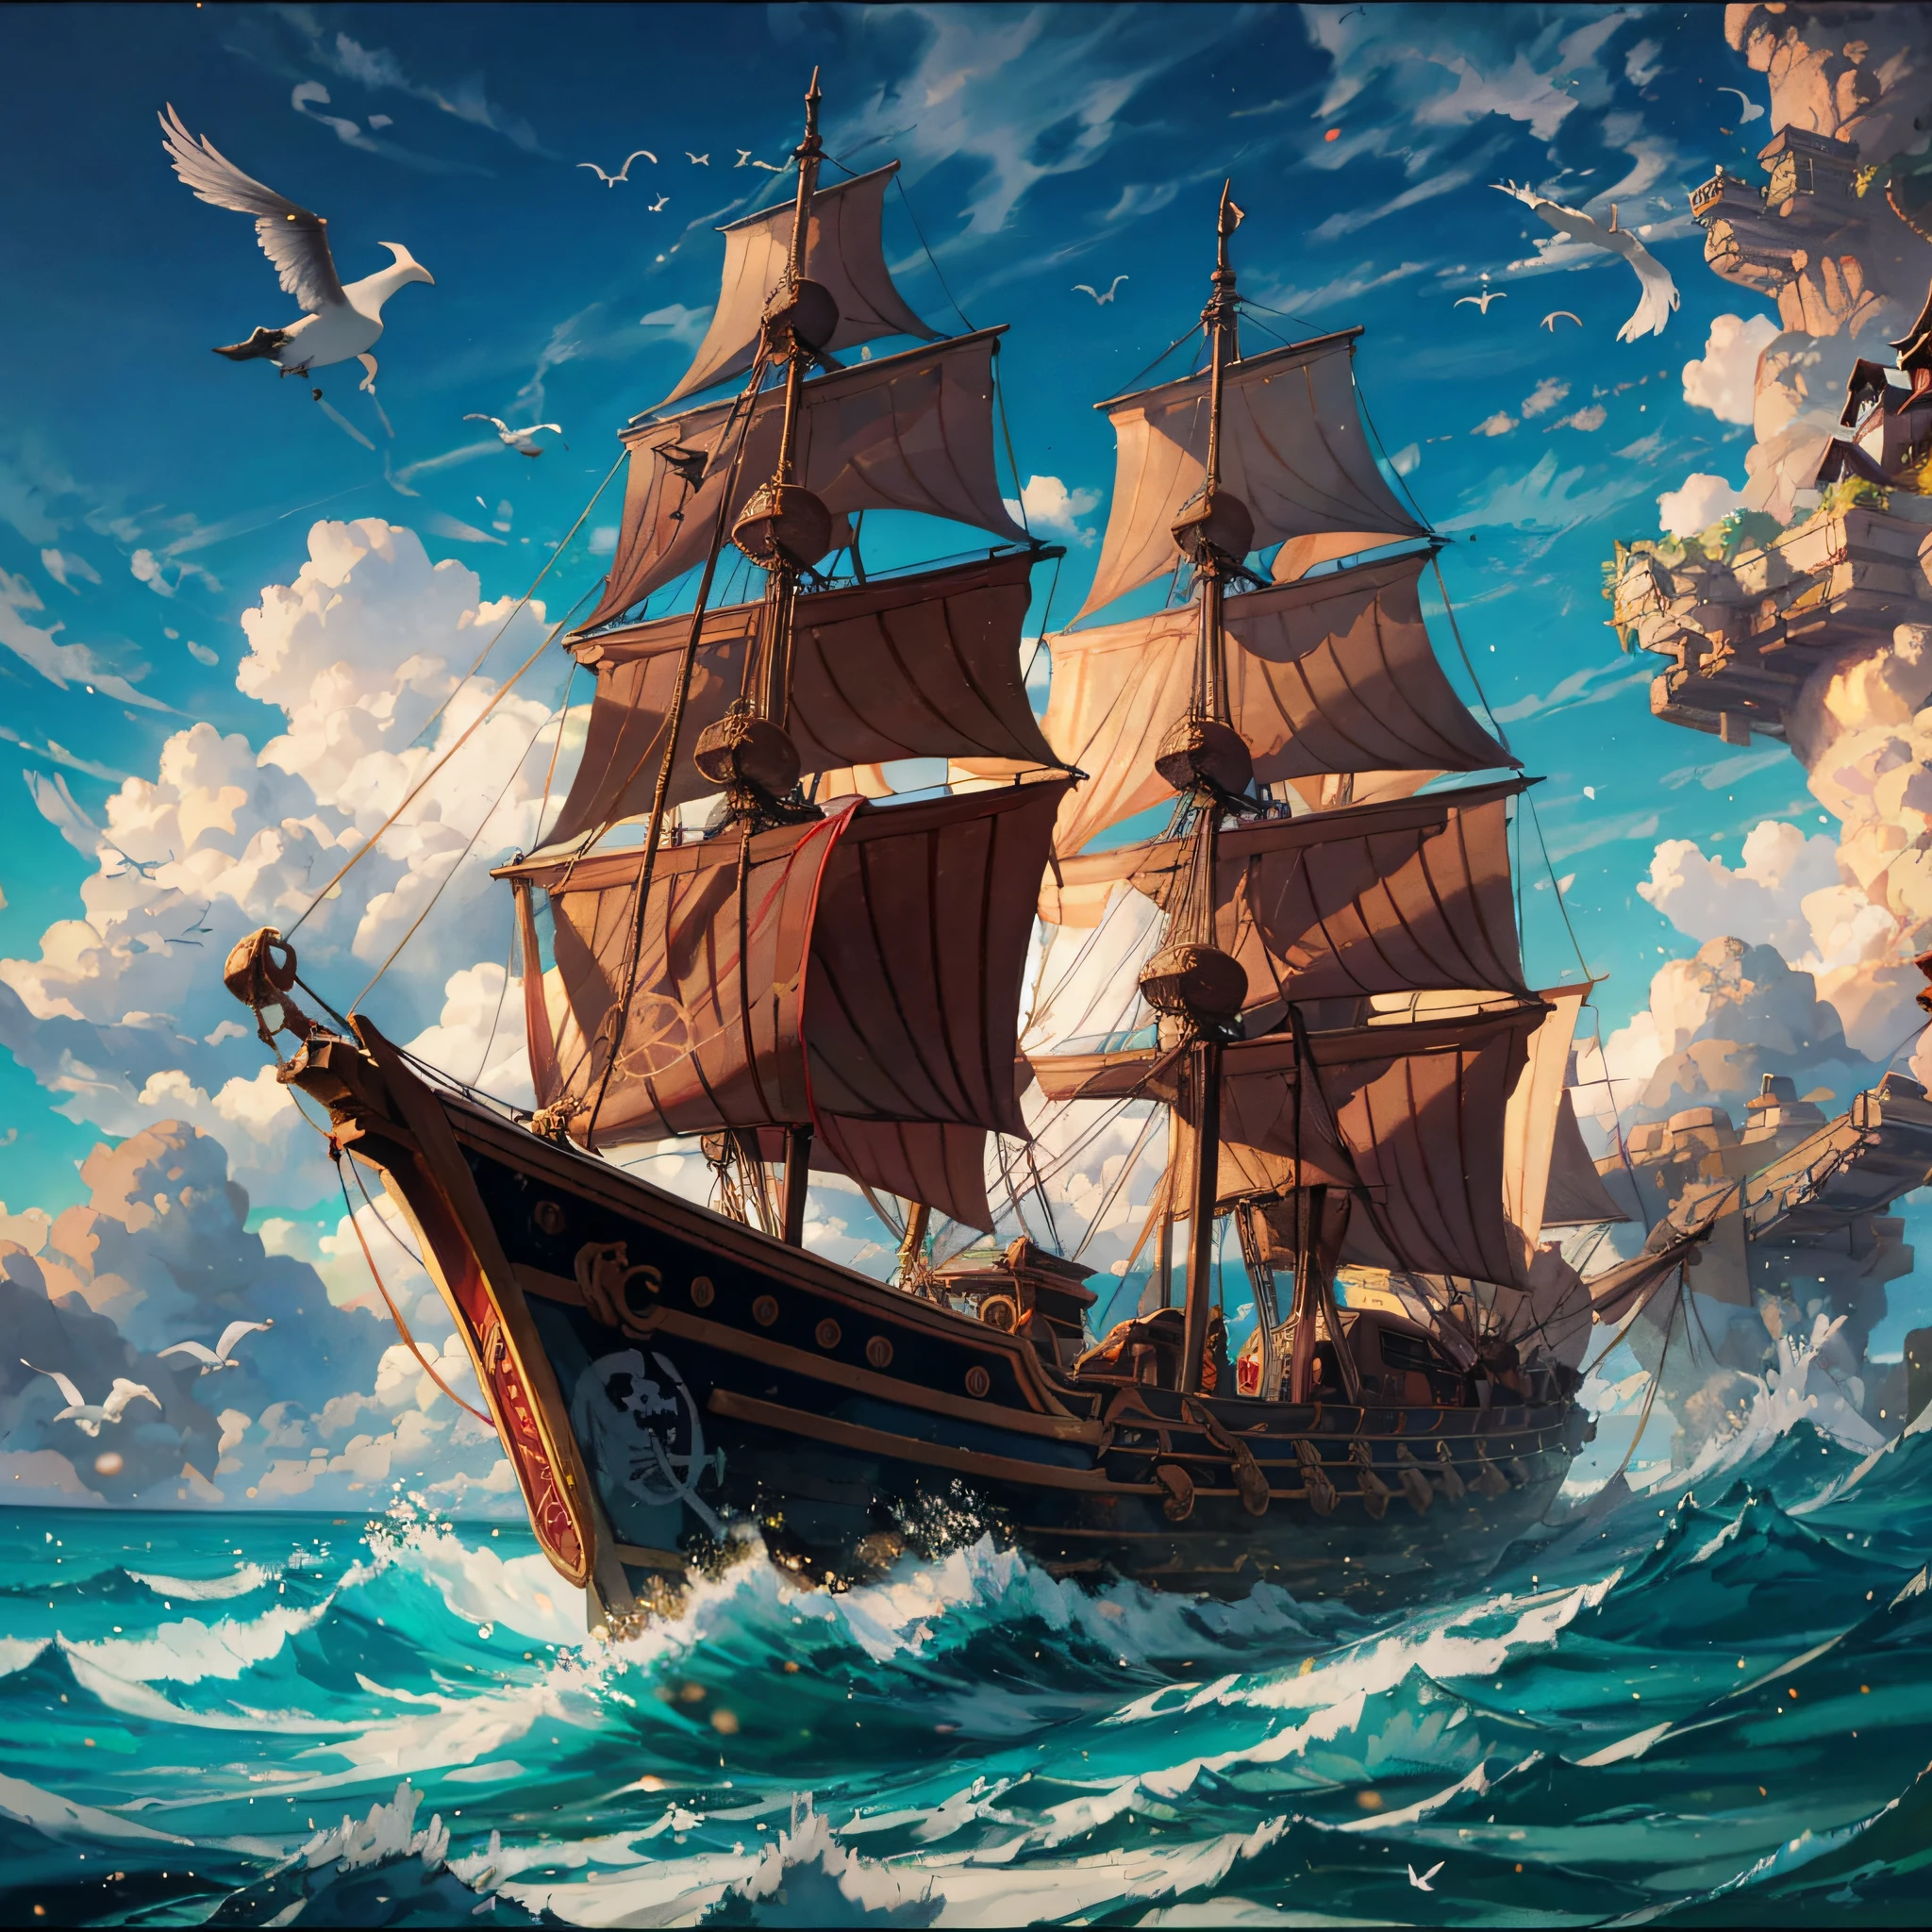 프레데릭 에드윈 교회 그림 스타일, 해적선, 전투, 갈매기, 건스모크, 절묘한 구성, 풍부한 구성,